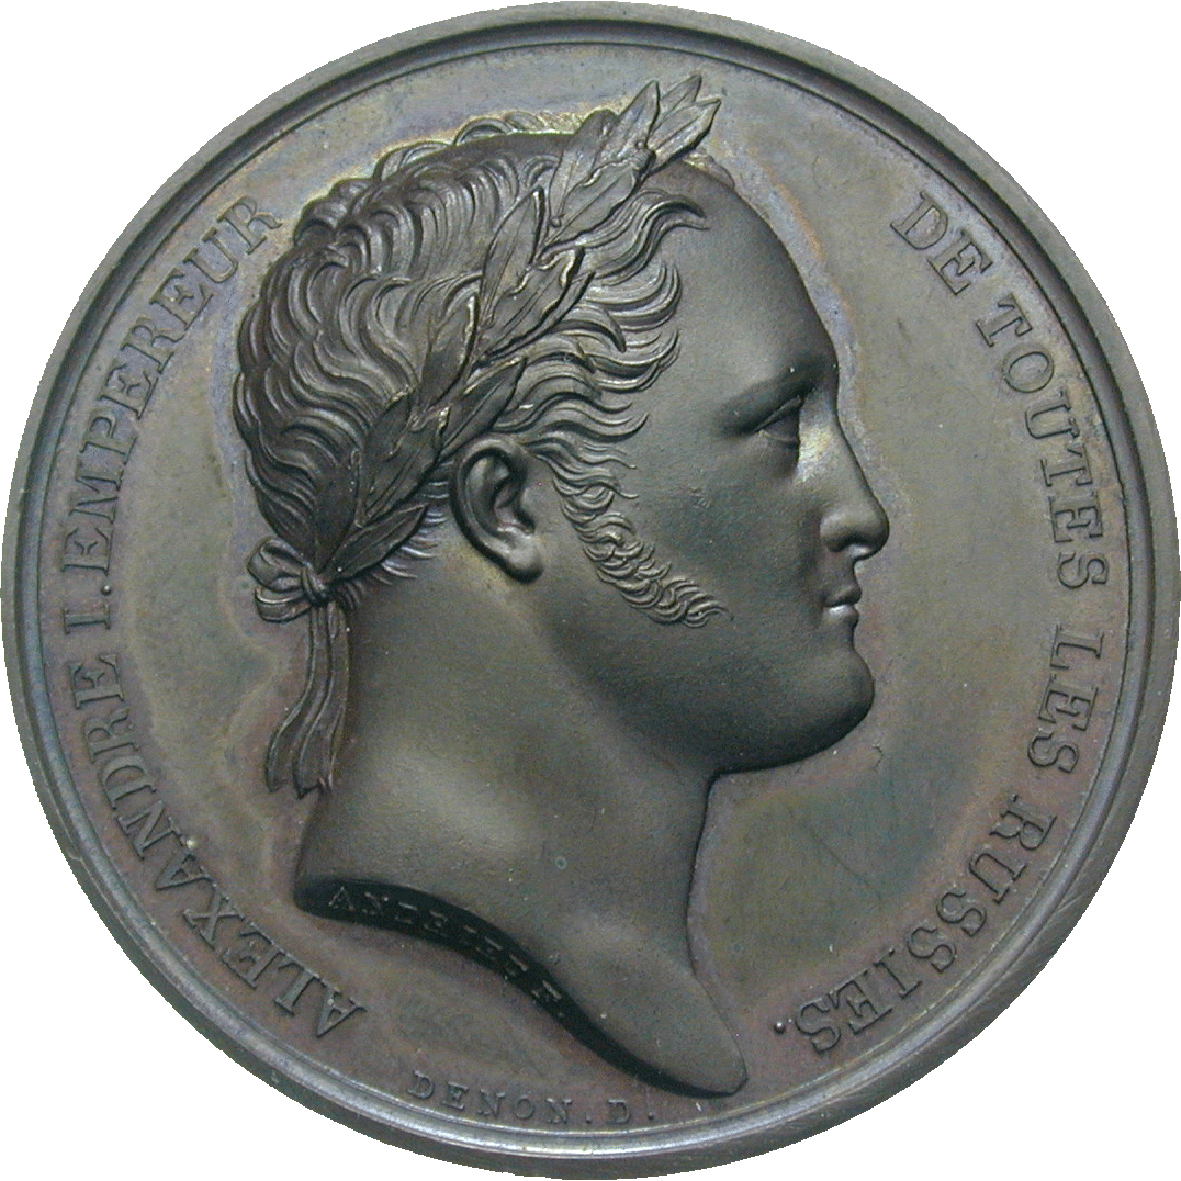 Russian Empire, Alexander I, Medal 1814 (obverse)